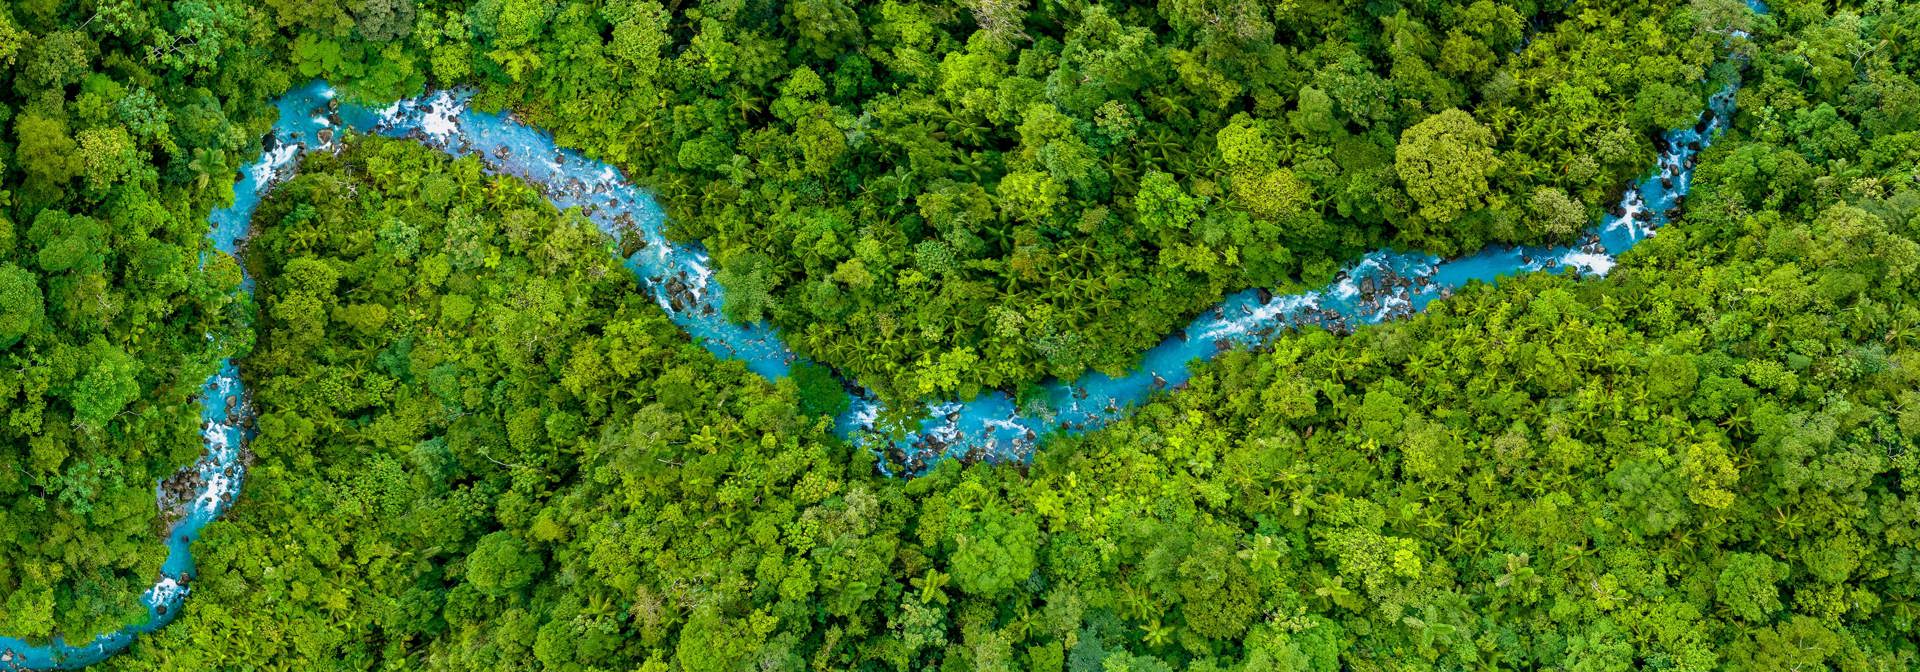 River Landscape Aerial